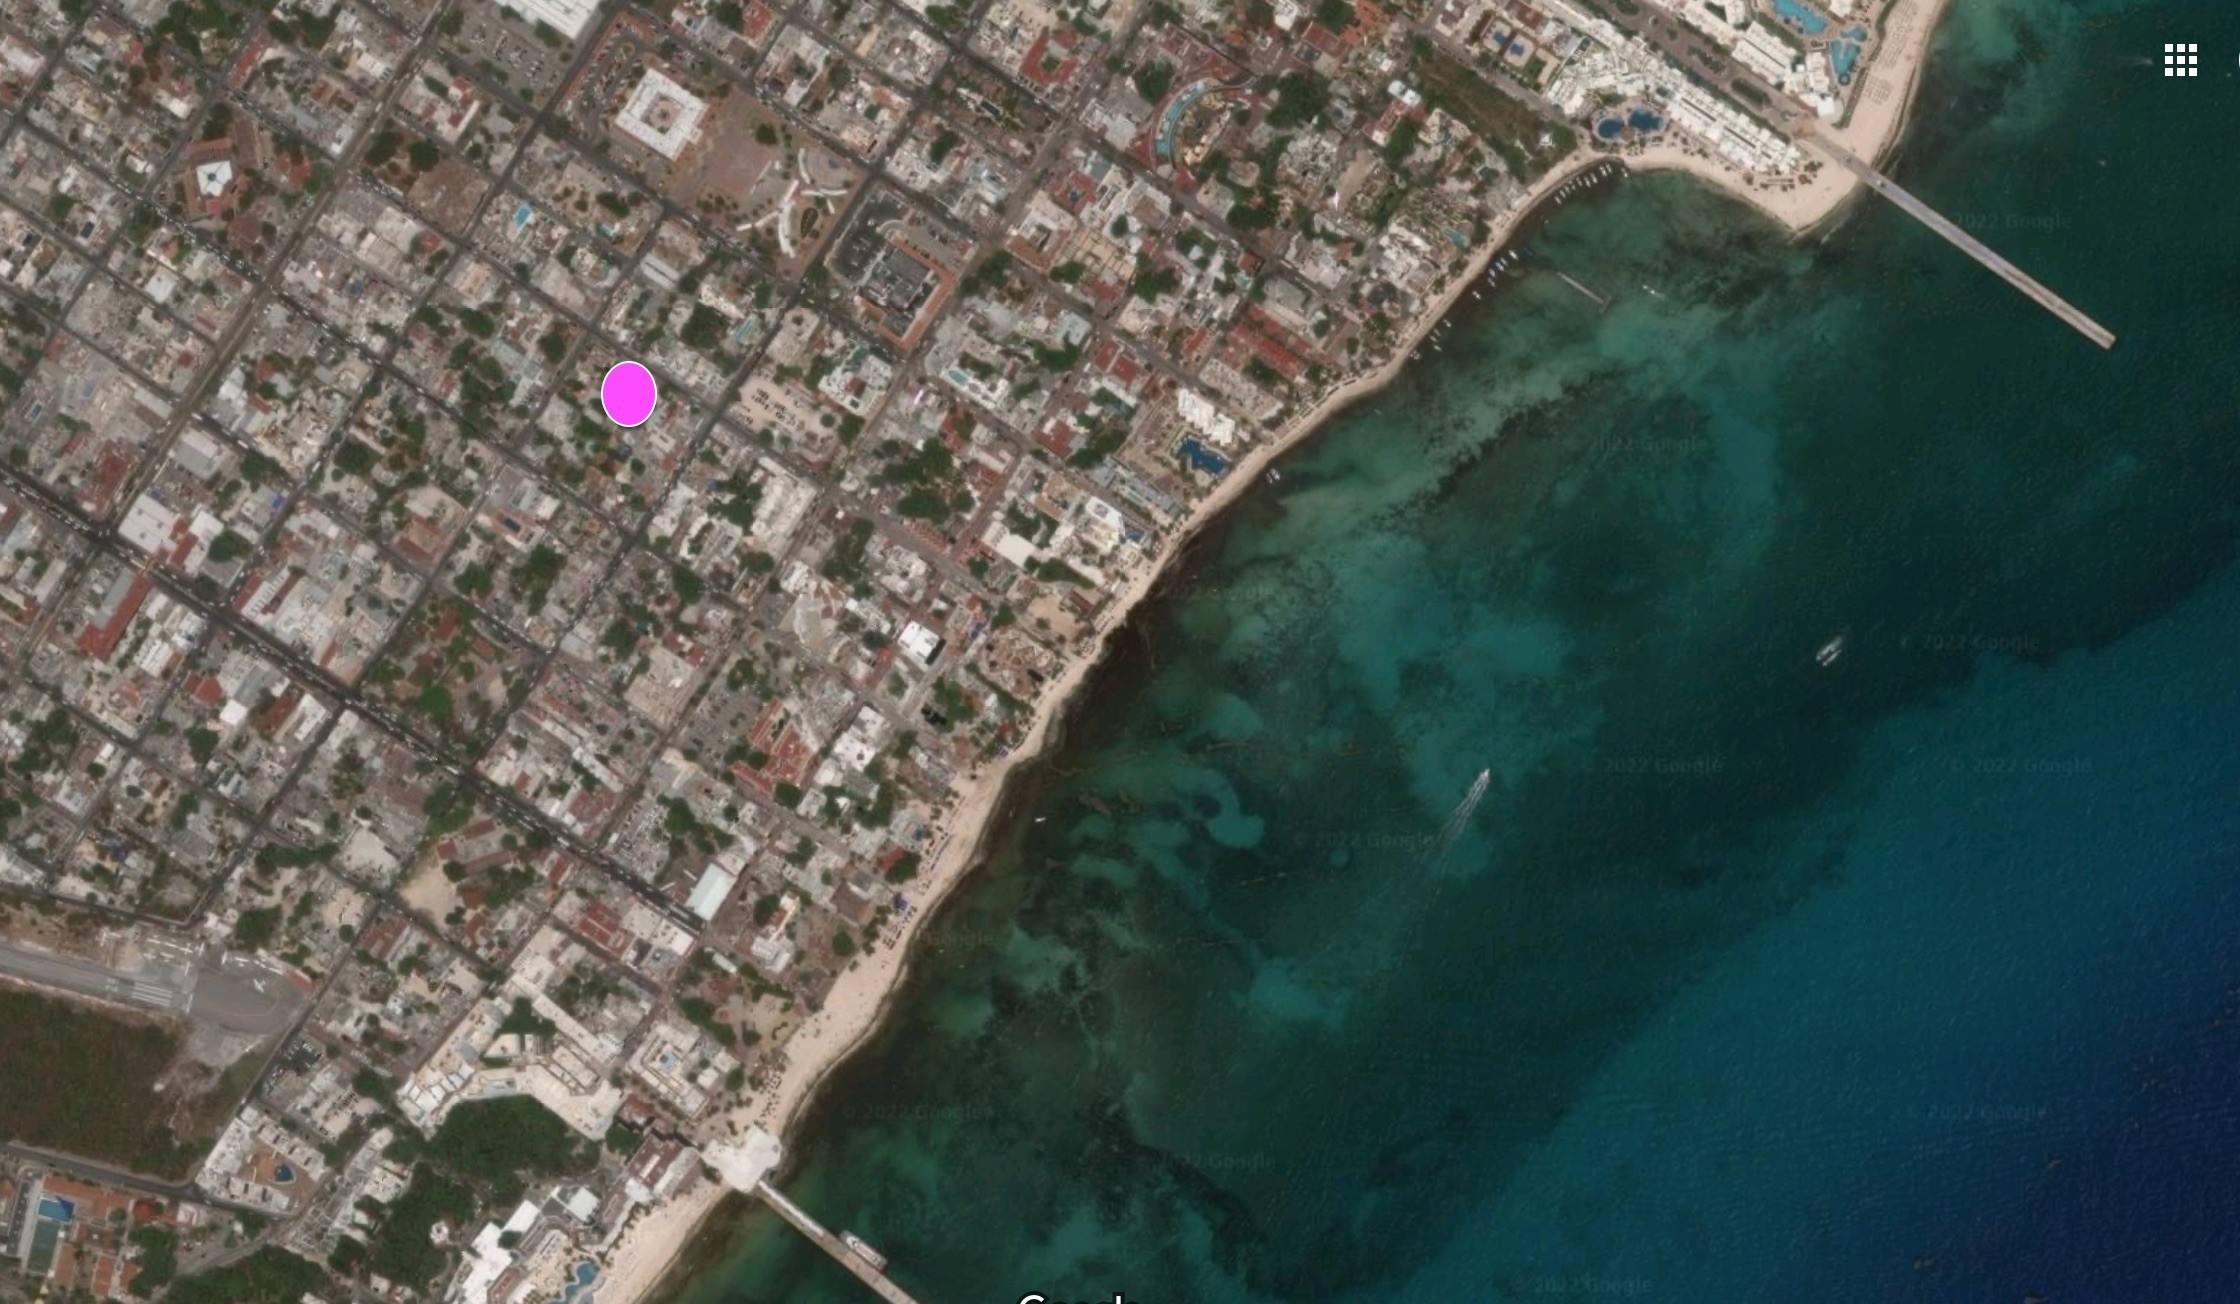 1. Development Land For Sale In Playa Del Carmen Downtown